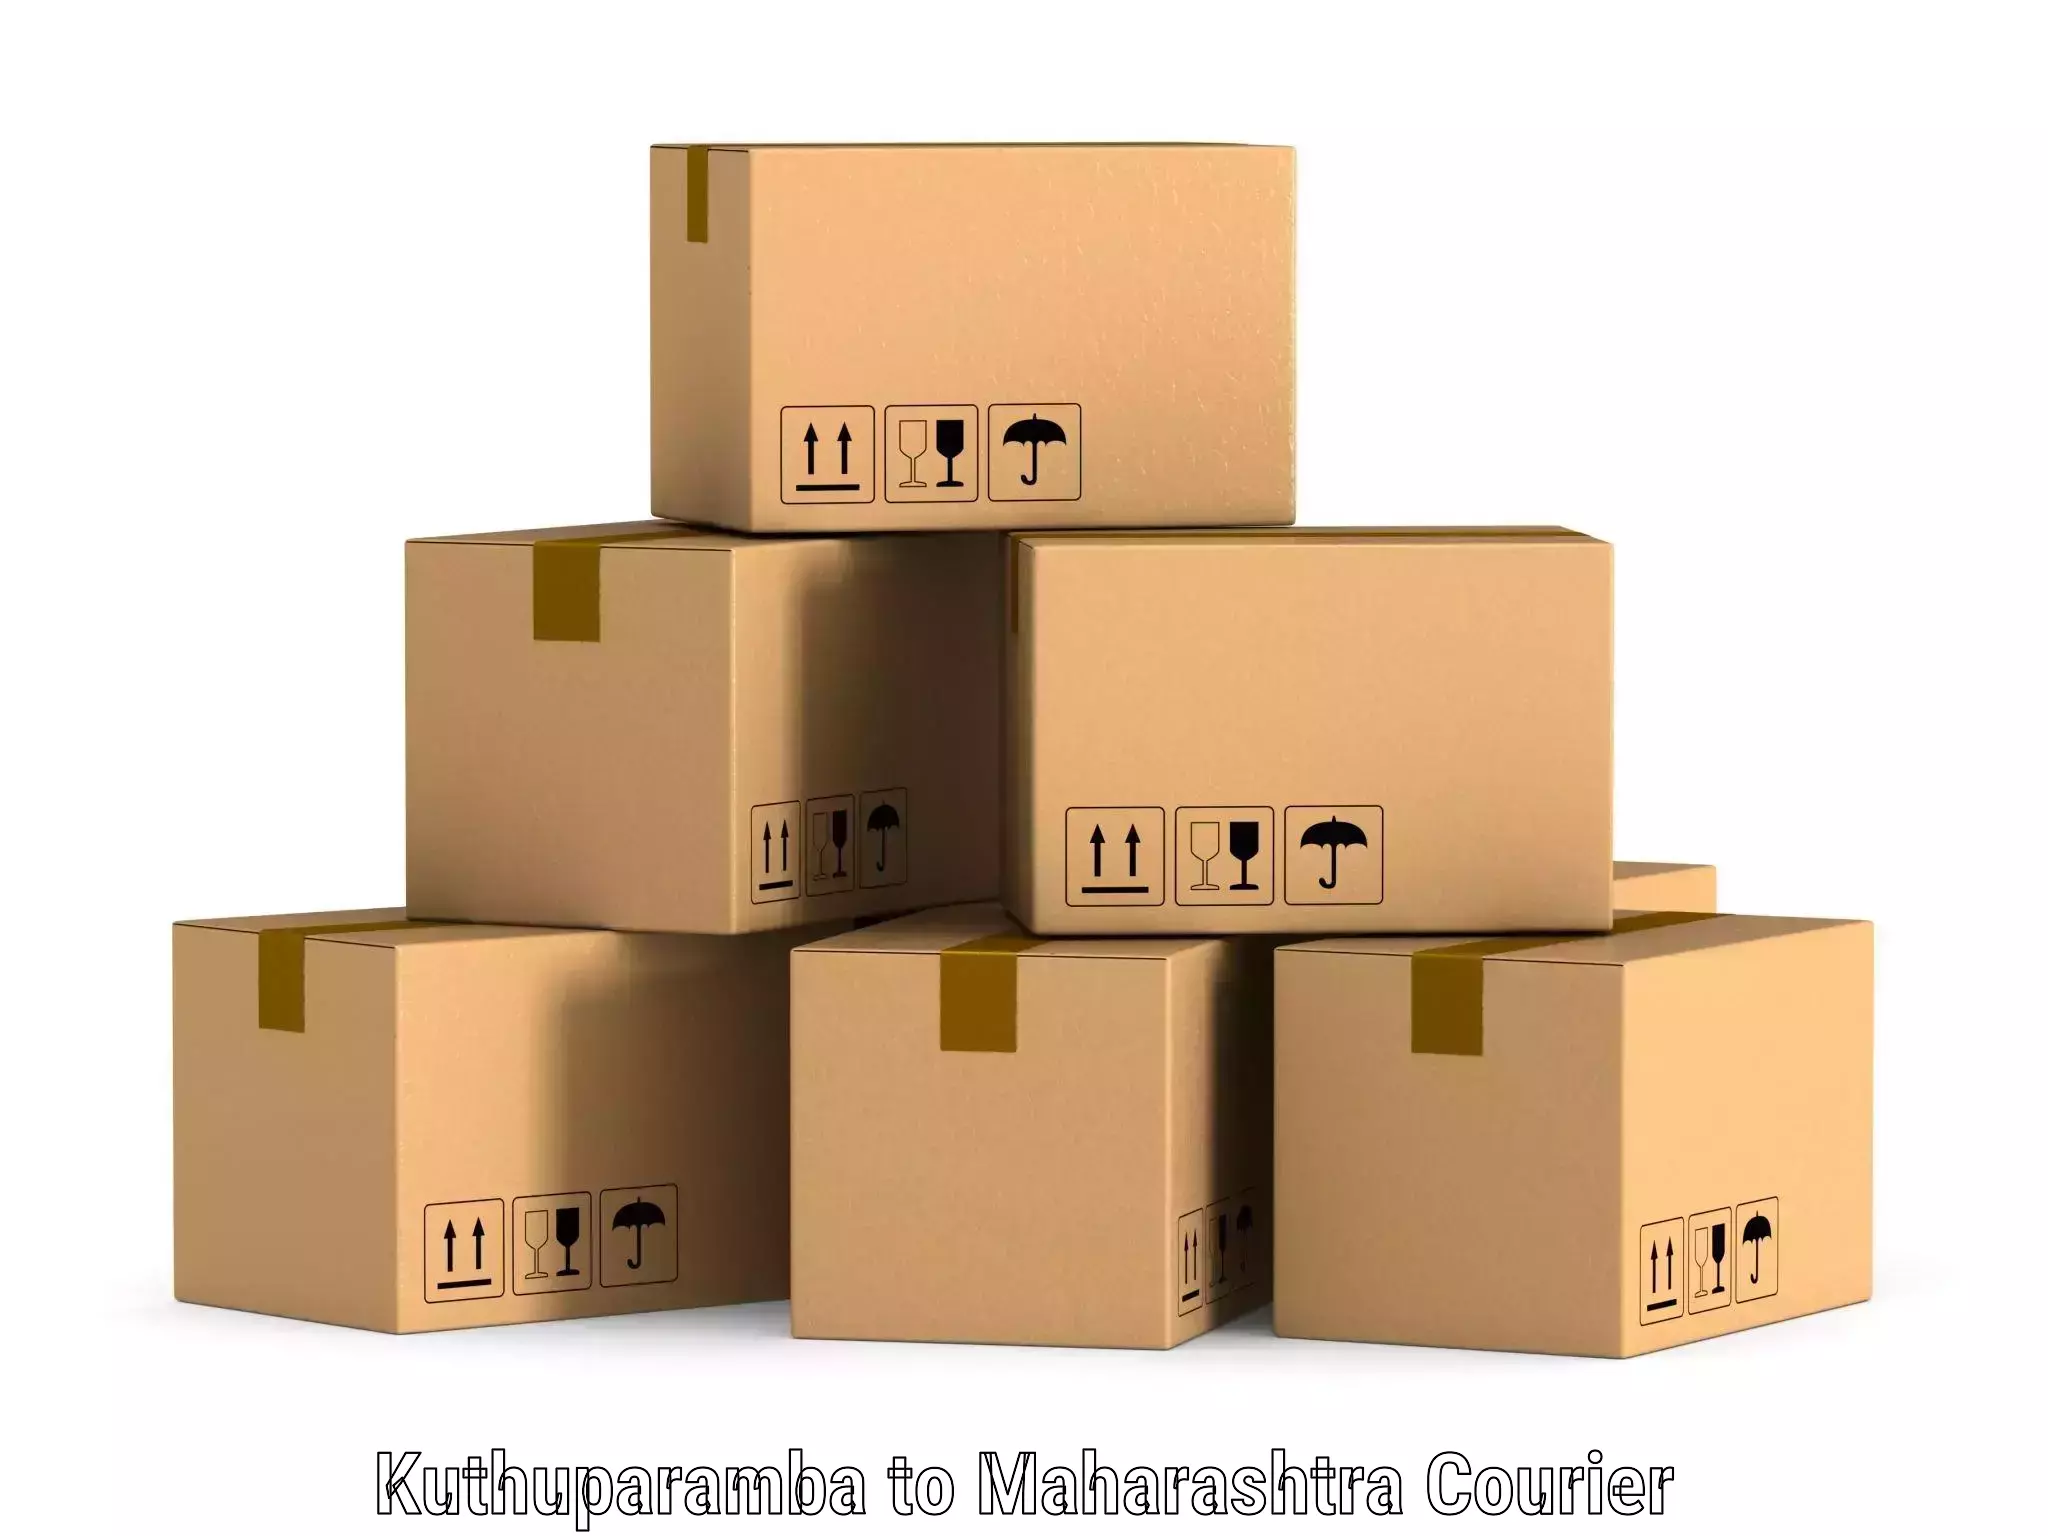 Automated parcel services Kuthuparamba to Maharashtra